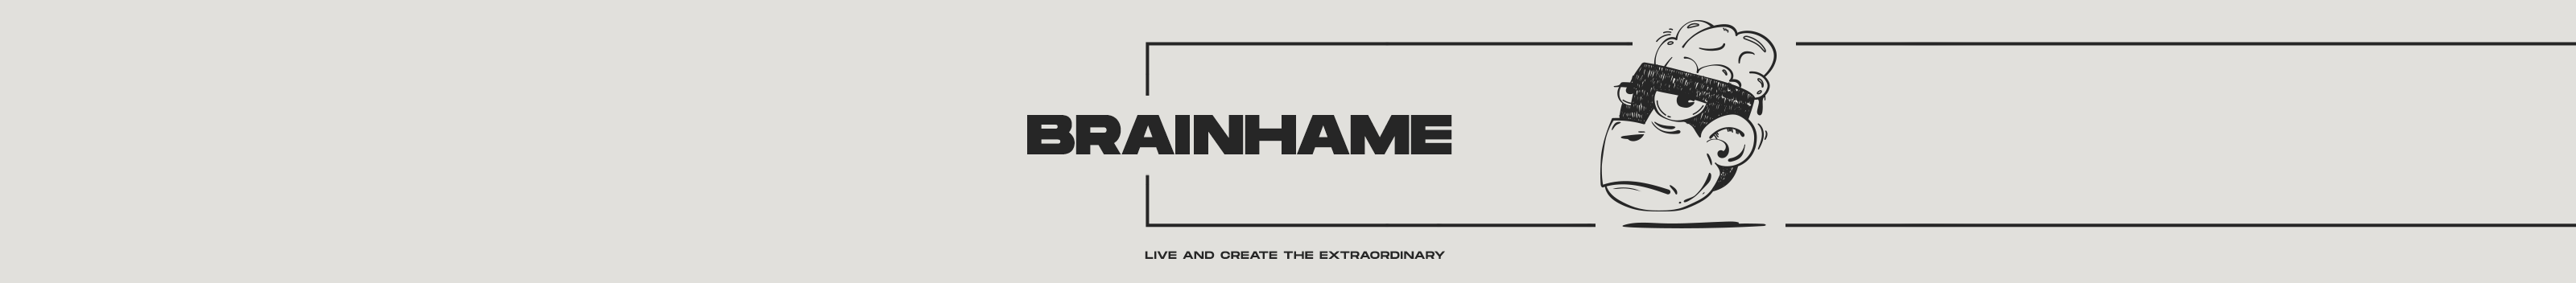 Brainhame Design Studio's profile banner